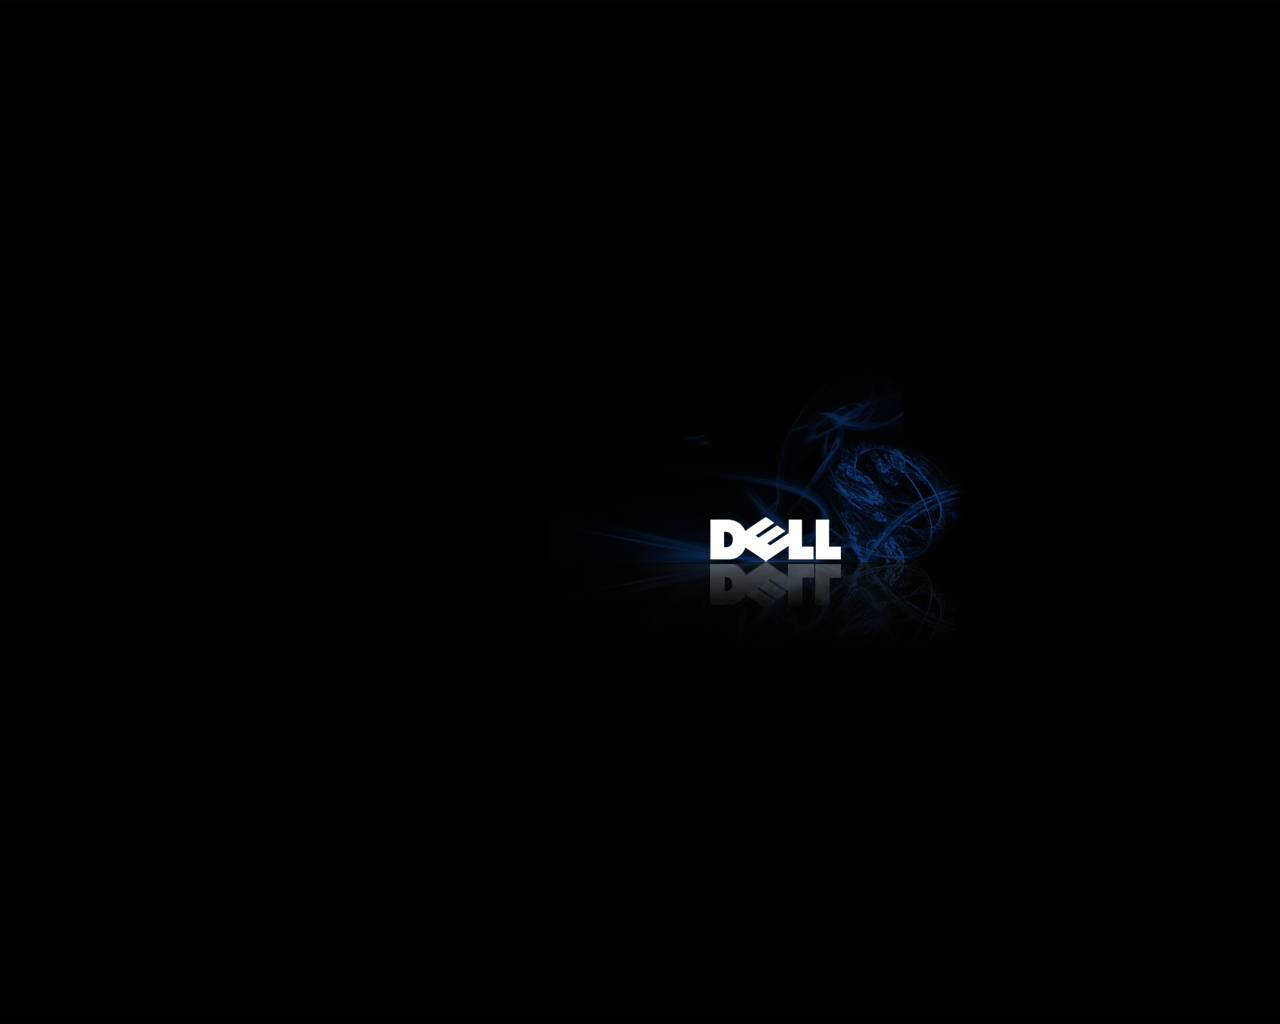 Dark Dell Logo Wallpapers - Wallpaper Cave